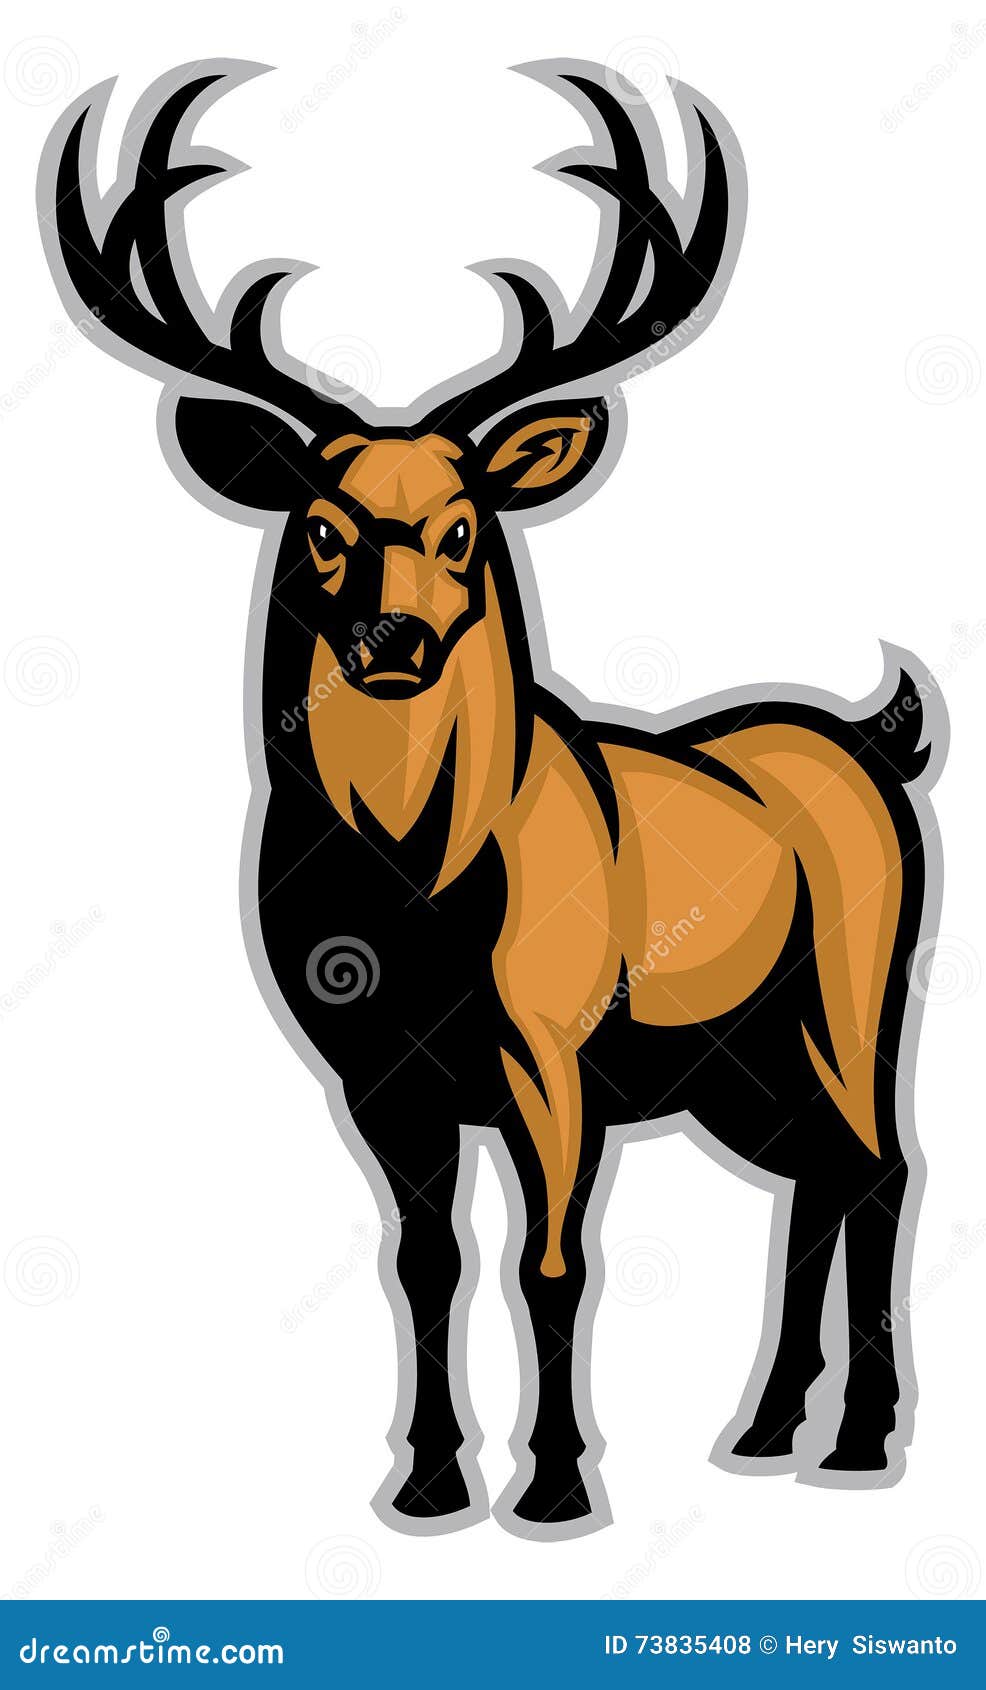 buck mascot